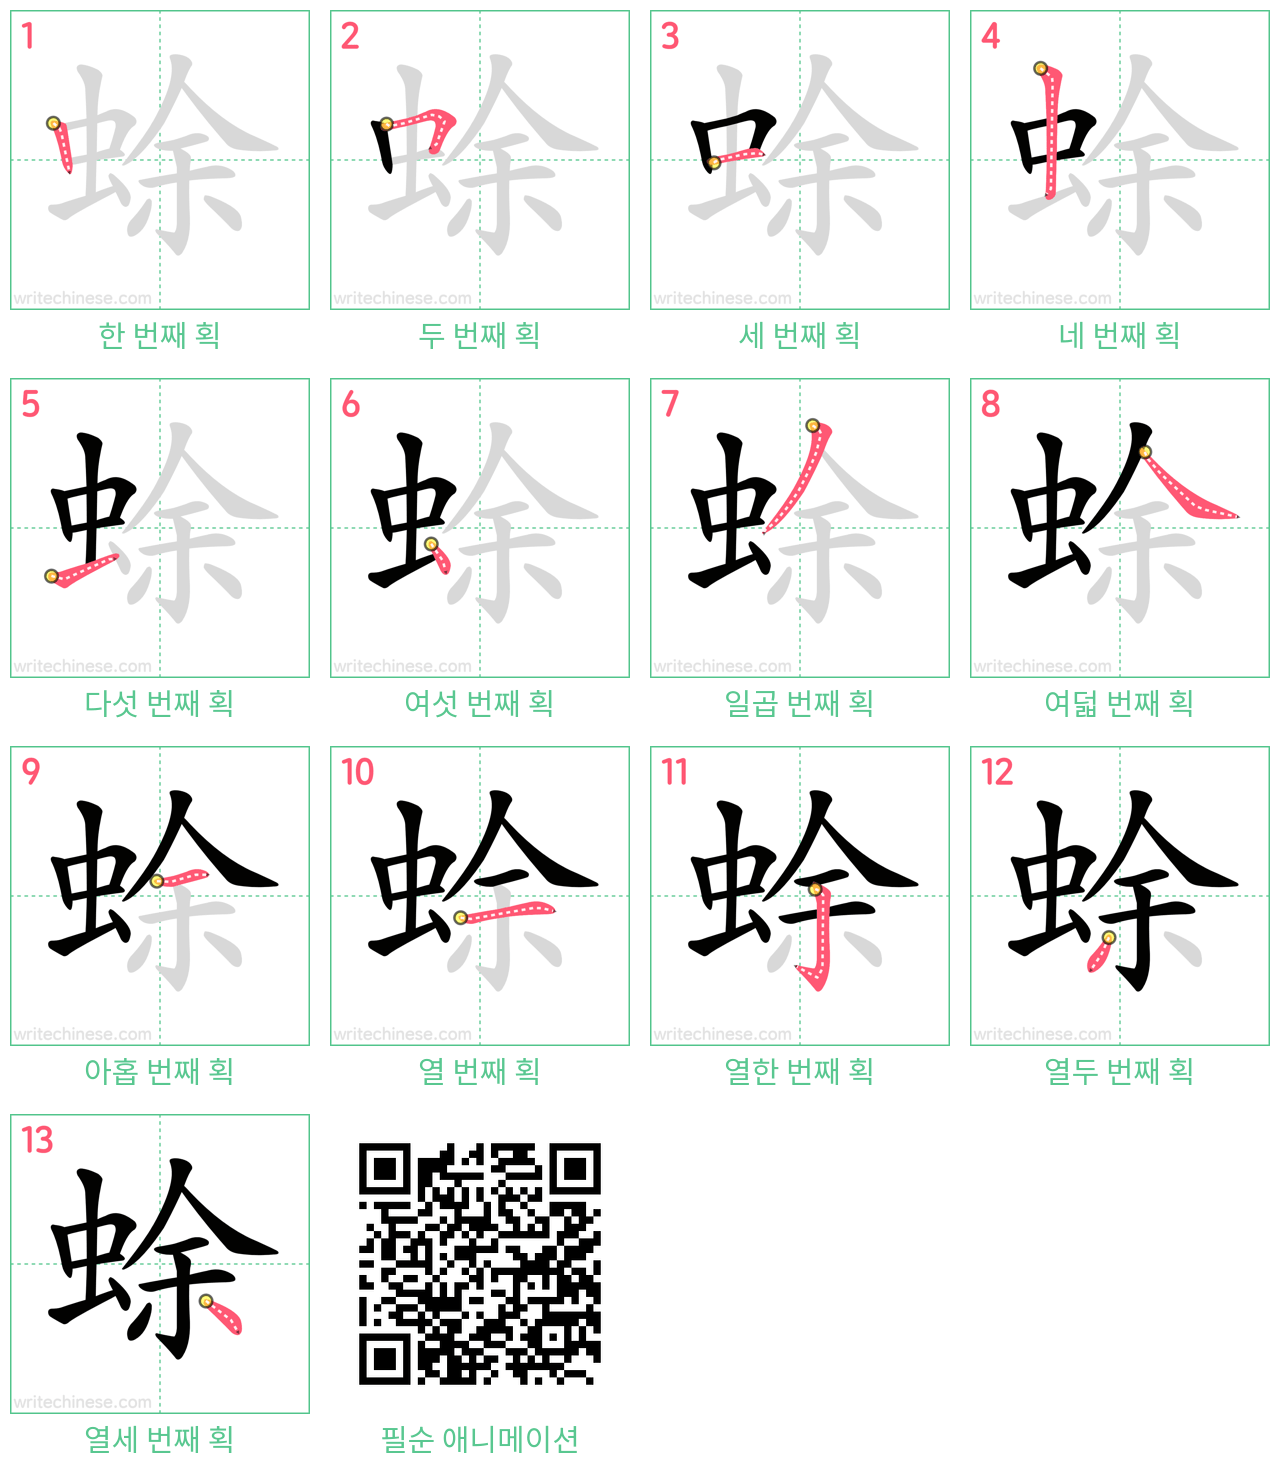 蜍 step-by-step stroke order diagrams